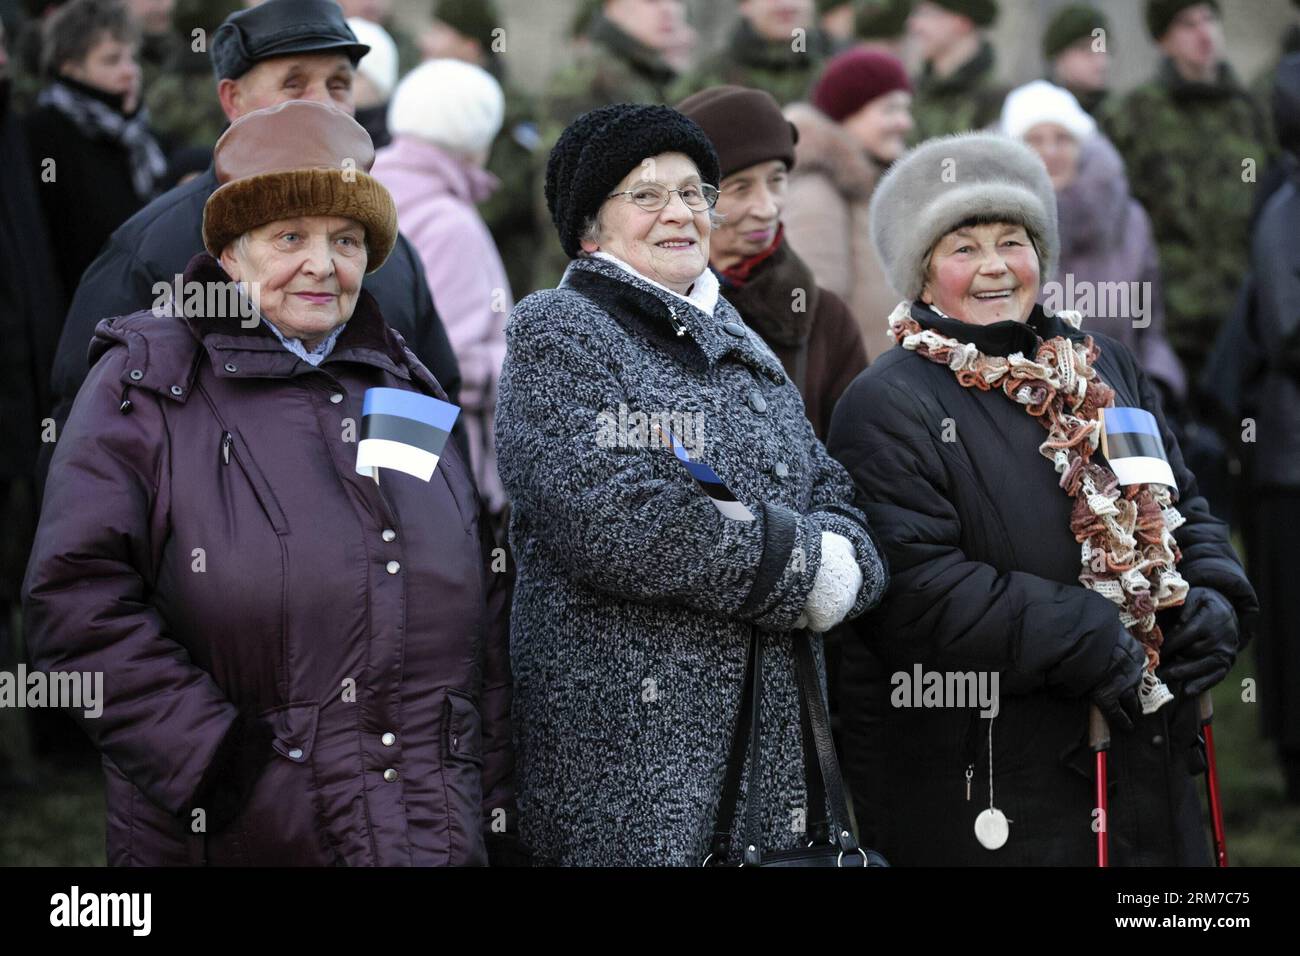 (140224) -- NARVA(ESTONIE), 24 février 2014 (Xinhua) -- des gens assistent à la cérémonie du lever du soleil à Narva, la ville la plus orientale de l'Estonie, le 24 février 2014. Estonie célébrant son 96 anniversaire de l'indépendance lundi, et la première cérémonie du lever du soleil dans le pays aurait lieu dans la ville de Narva. (Xinhua/Sergei Stepanov) ESTONIE-NARVA-ANNIVERSAIRE DE L'INDÉPENDANCE PUBLICATIONxNOTxINxCHN Narva Estonie février 24 2014 des célébrités XINHUA assistent à la cérémonie du drapeau du lever du soleil à Narva la ville la plus orientale de l'Estonie février 24 2014 Estonie célébrant SON 96 anniversaire de l'indépendance LE lundi et le premier lever du soleil F Banque D'Images